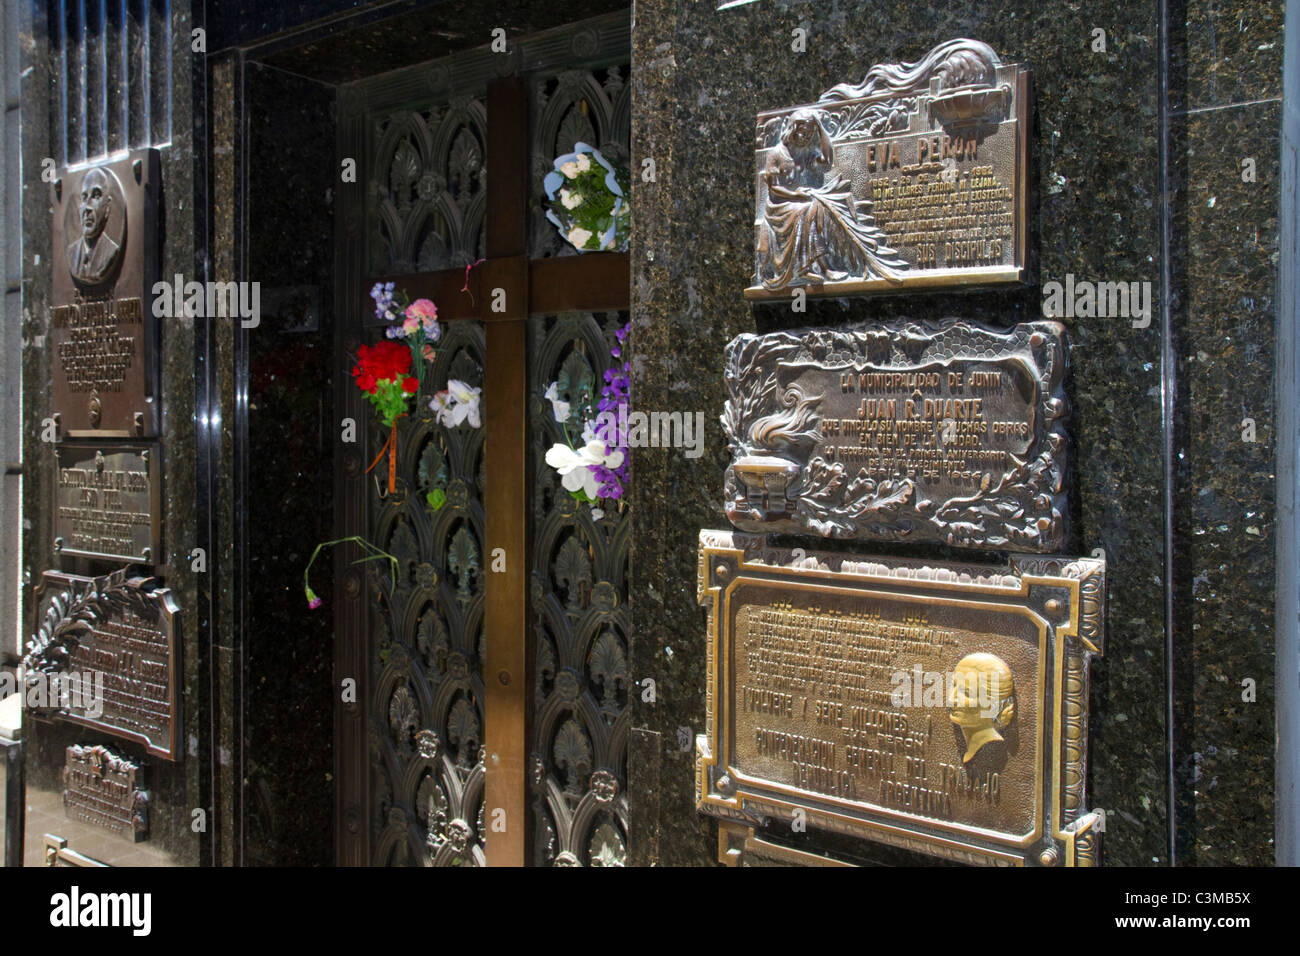 Bronze plaque marking Eva Peron mausoleum in La Recoleta Cemetery, Buenos Aires, Argentina. Stock Photo